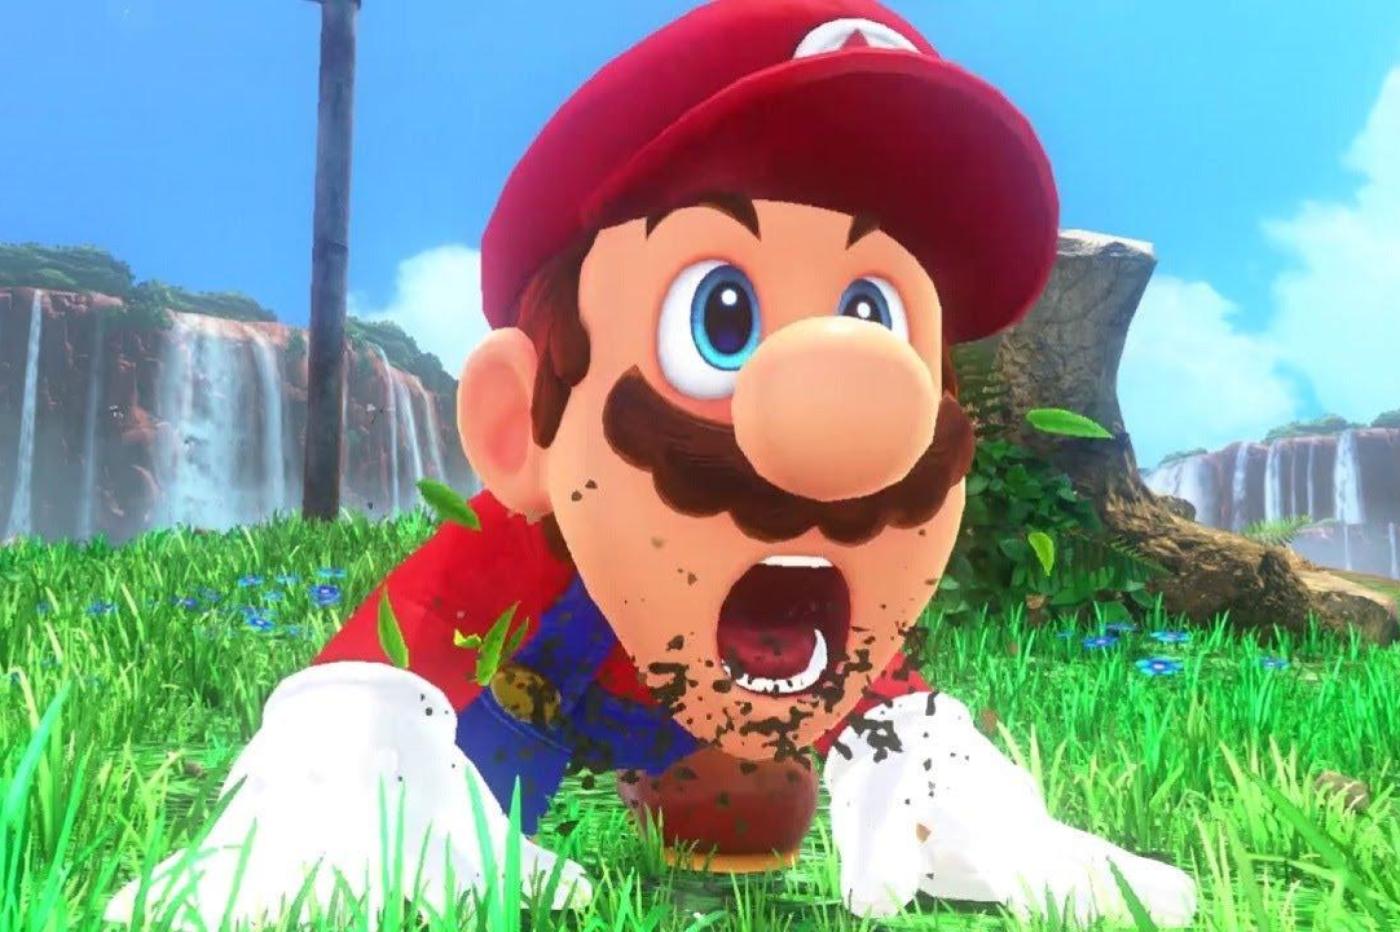 Capture d'écran de Mario Odyssey avec Mario au sol montrant un air surpris